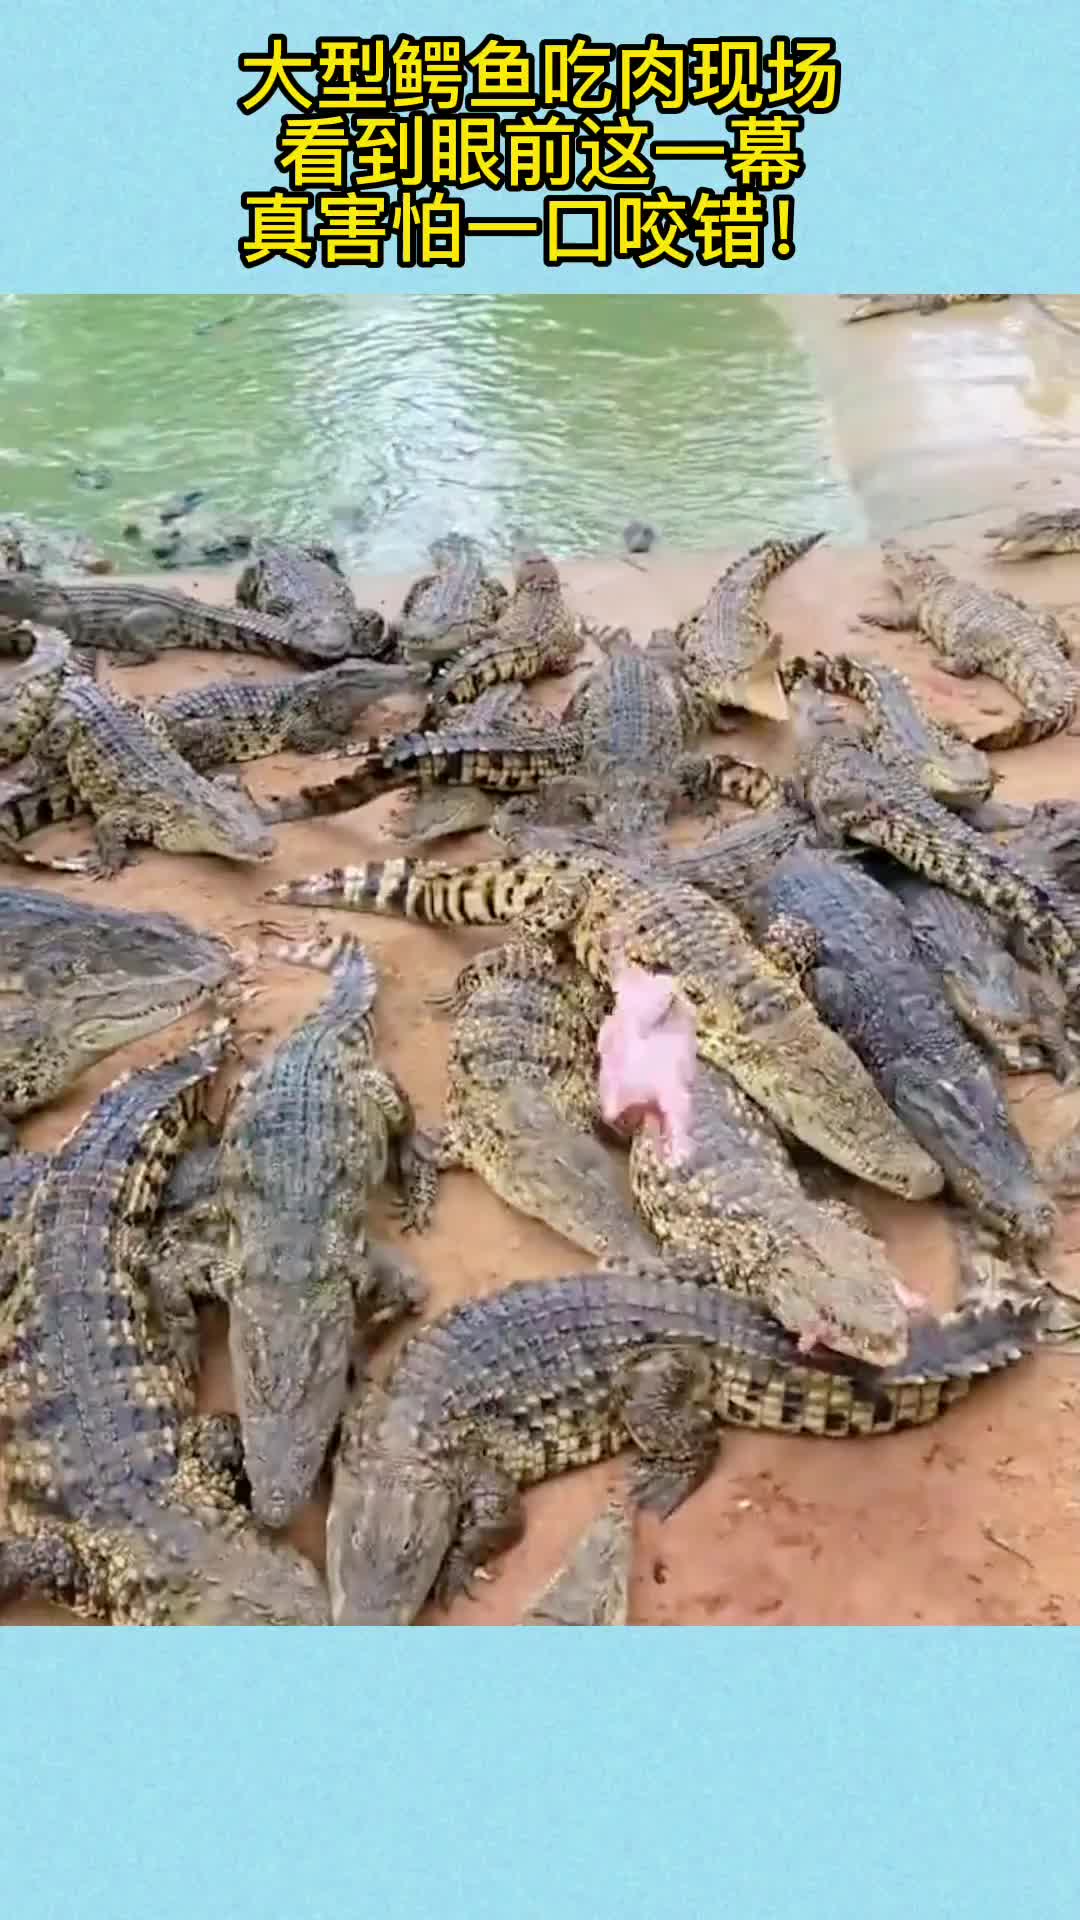 大型鳄鱼吃肉现场,看到眼前这一幕,真害怕一口咬错!